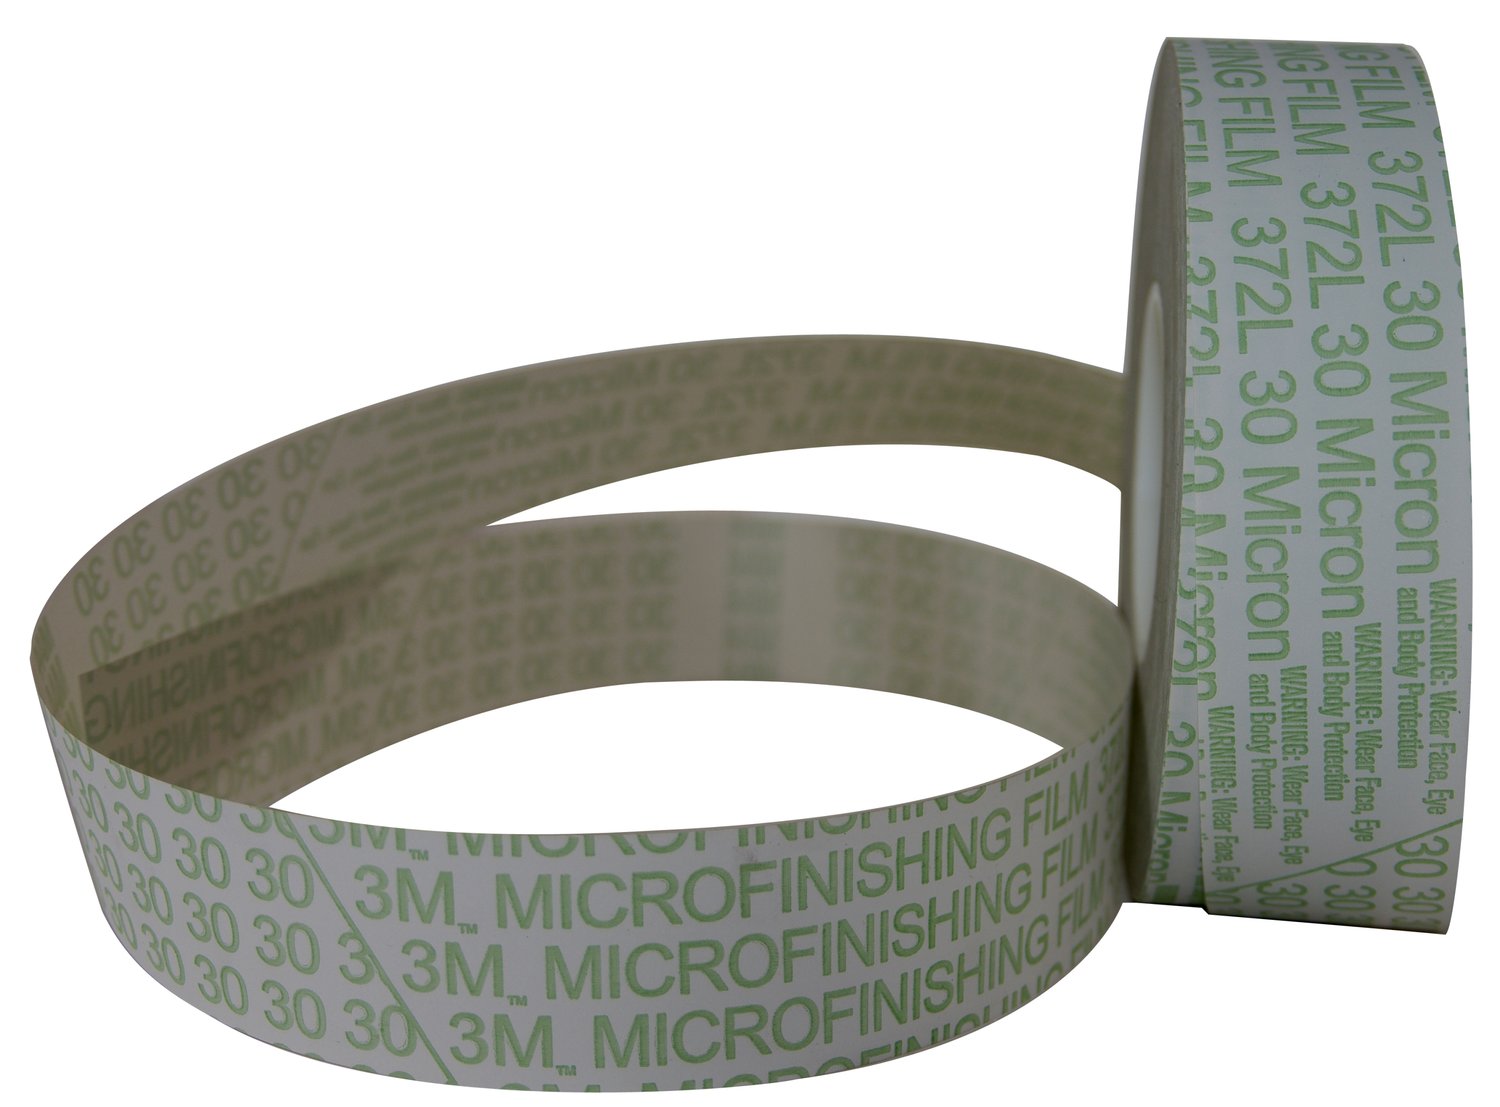 7010509086 - 3M Microfinishing Film Belt 362L, 30 Mic 3MIL, 2 in x 30 in